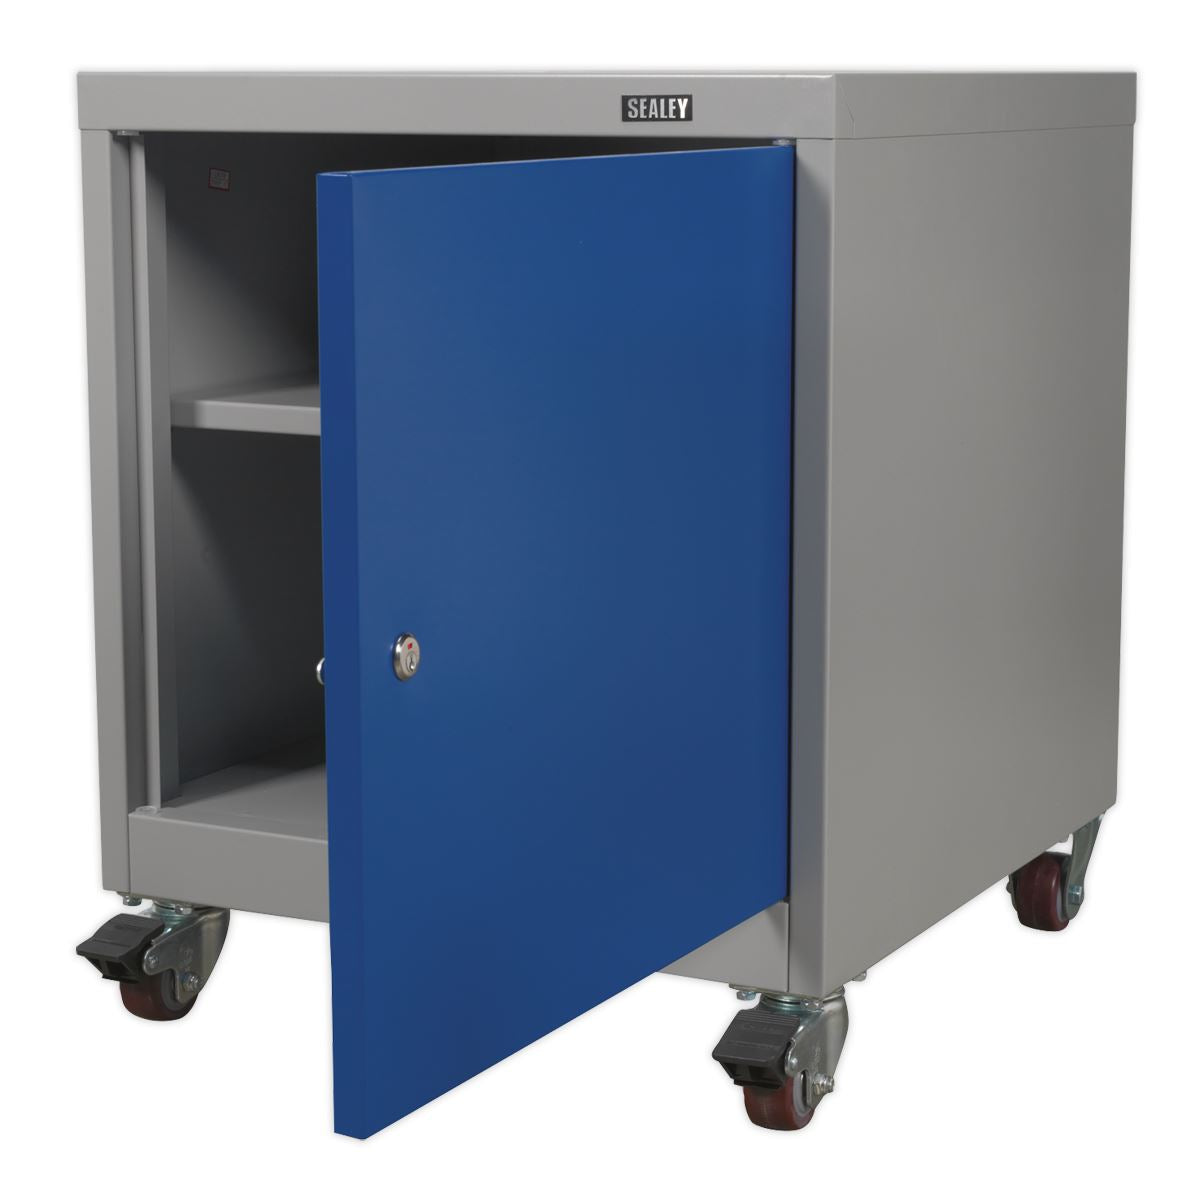 Sealey Premier Industrial Mobile Industrial Cabinet 1 Shelf Locker